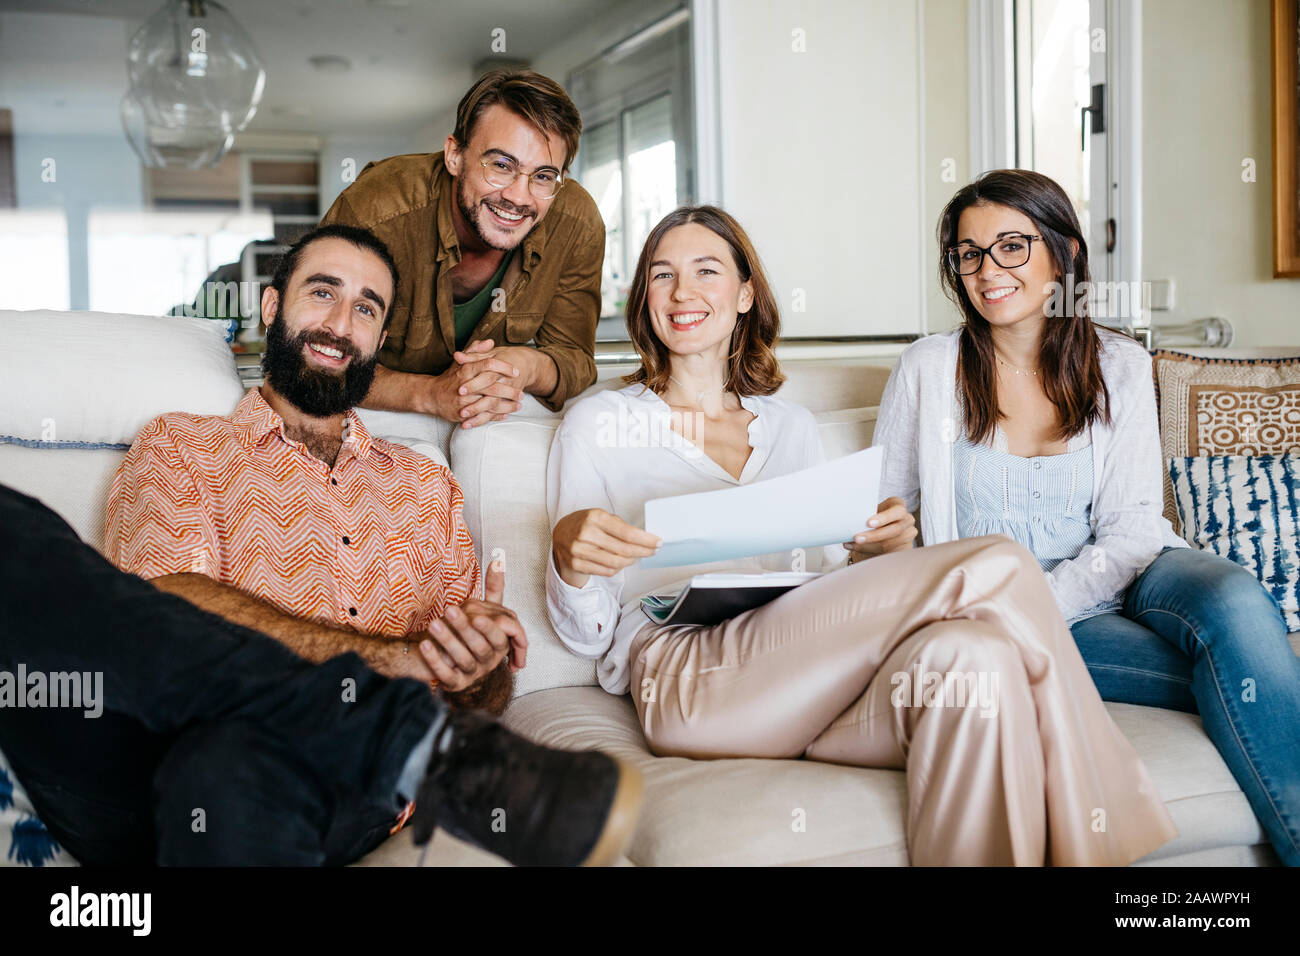 Portrait of happy friends sitting on couch avec papiers Banque D'Images